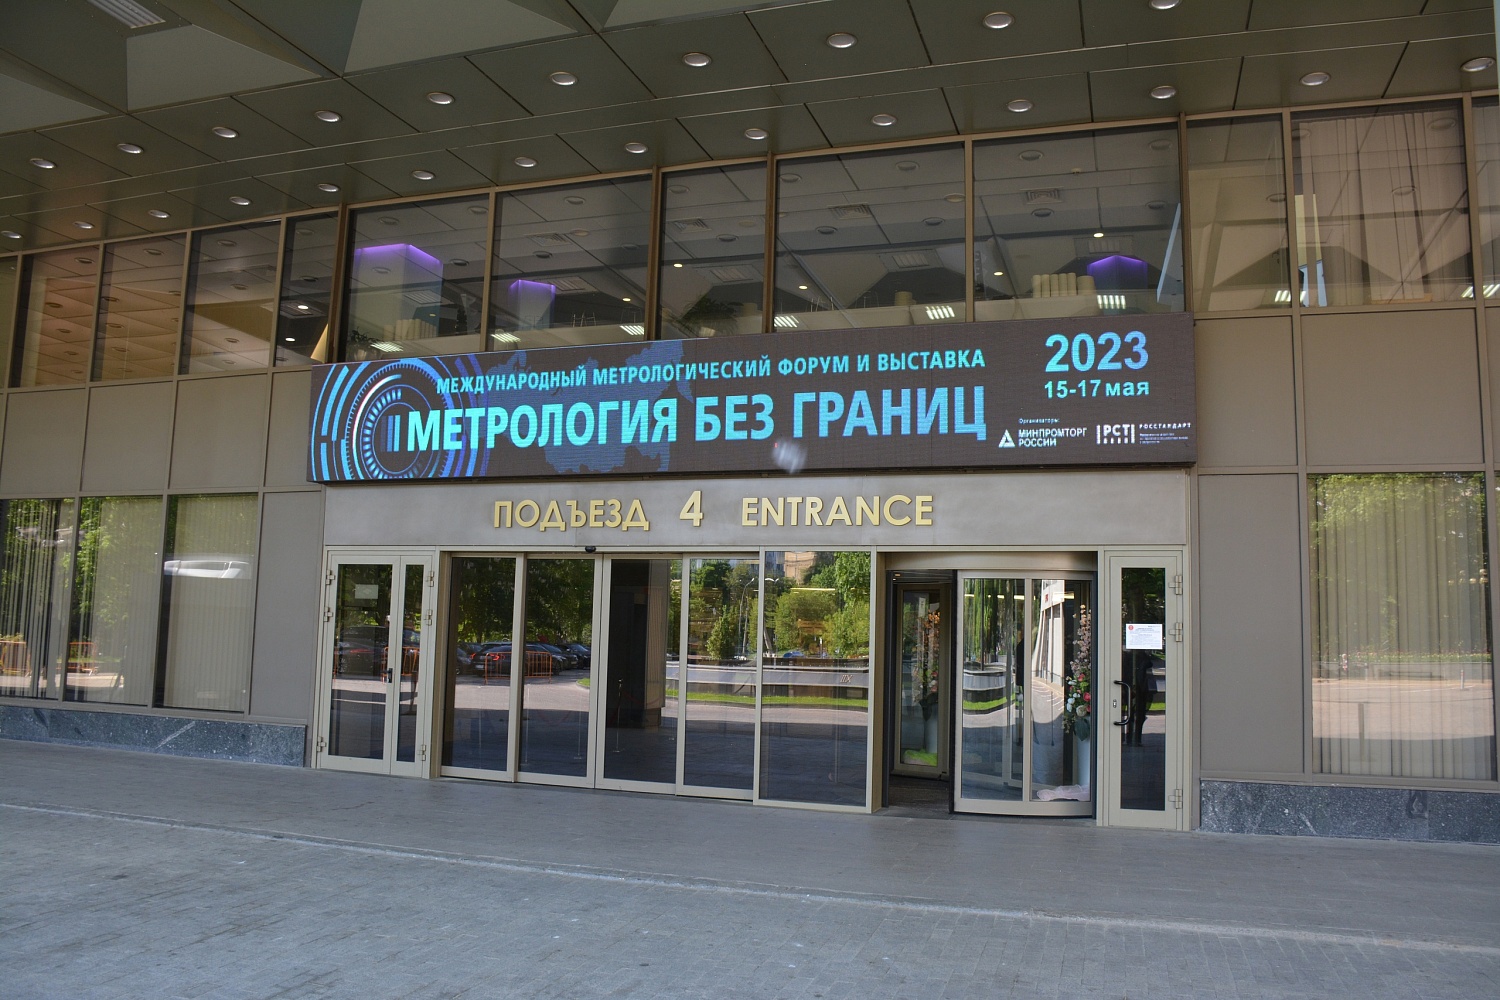 ВЗВТ принял участие в Международном метрологическом Форуме и выставке «Метрология без границ»